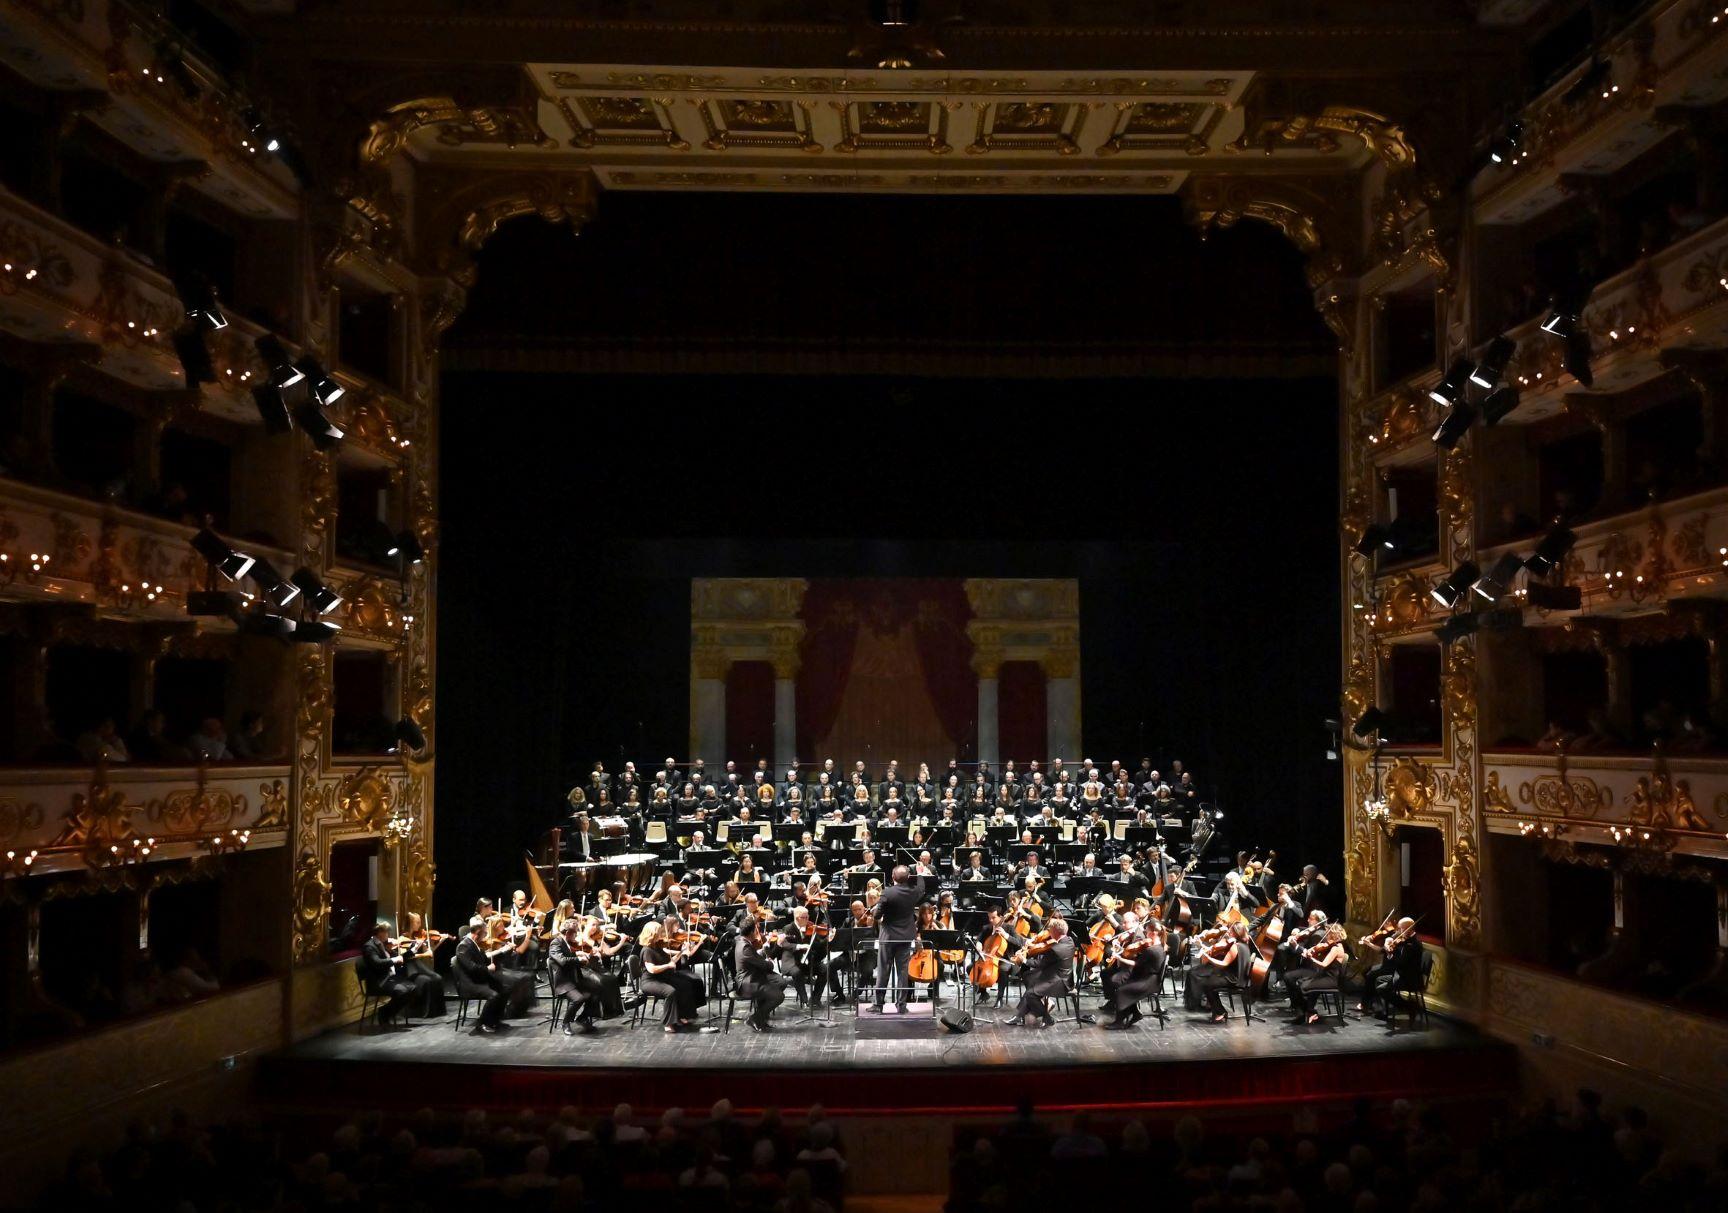 Daniele Gatti - Orchestra e Coro Maggio Musicale Fiorentino (foto Roberto Ricci - Teatro Regio di Parma)